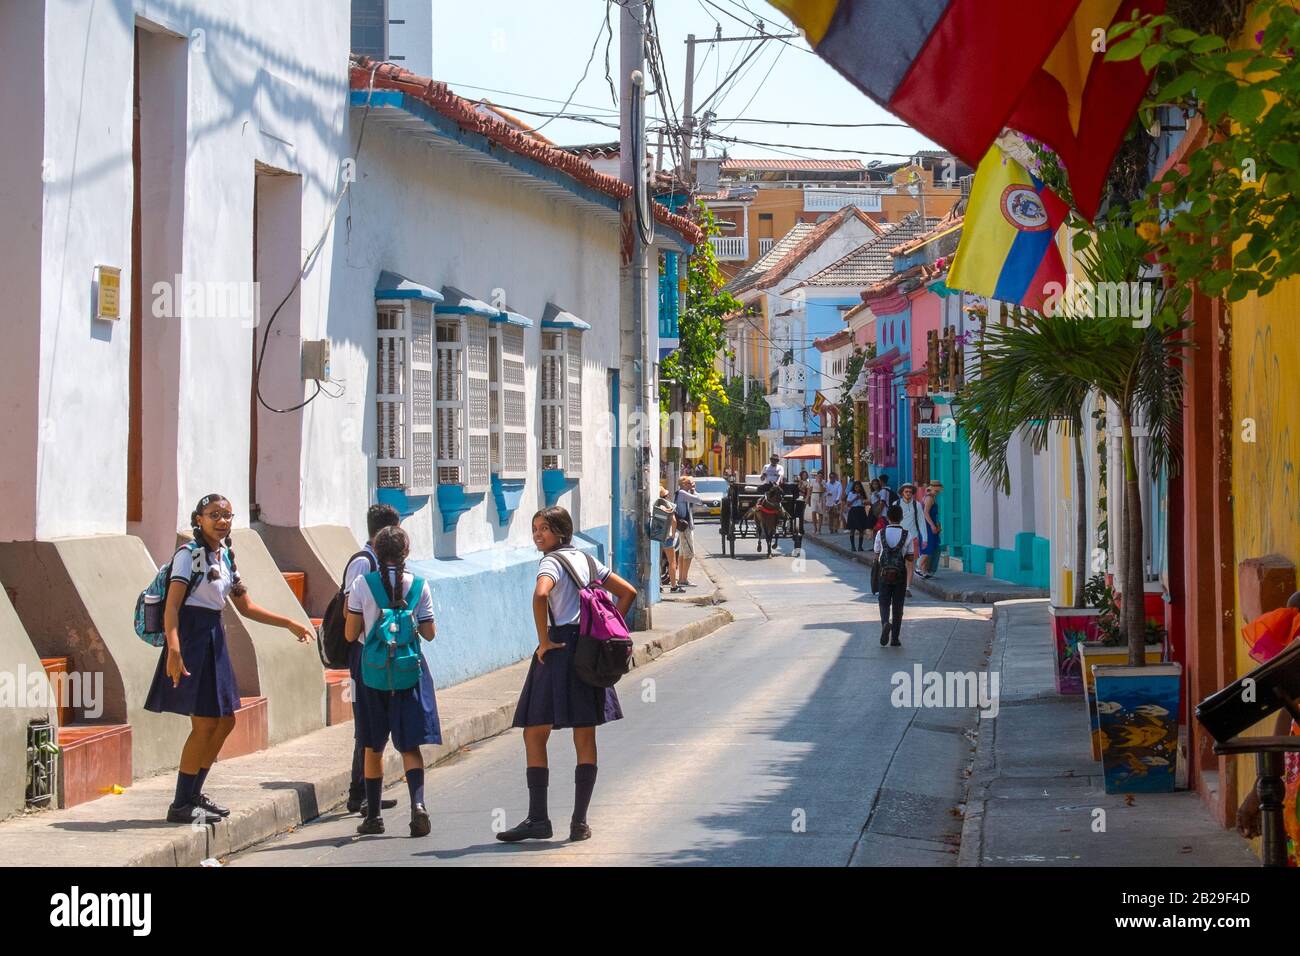 Schulmädchen in Uniform auf einer Straße in Cartagena, Kolumbien Stockfoto